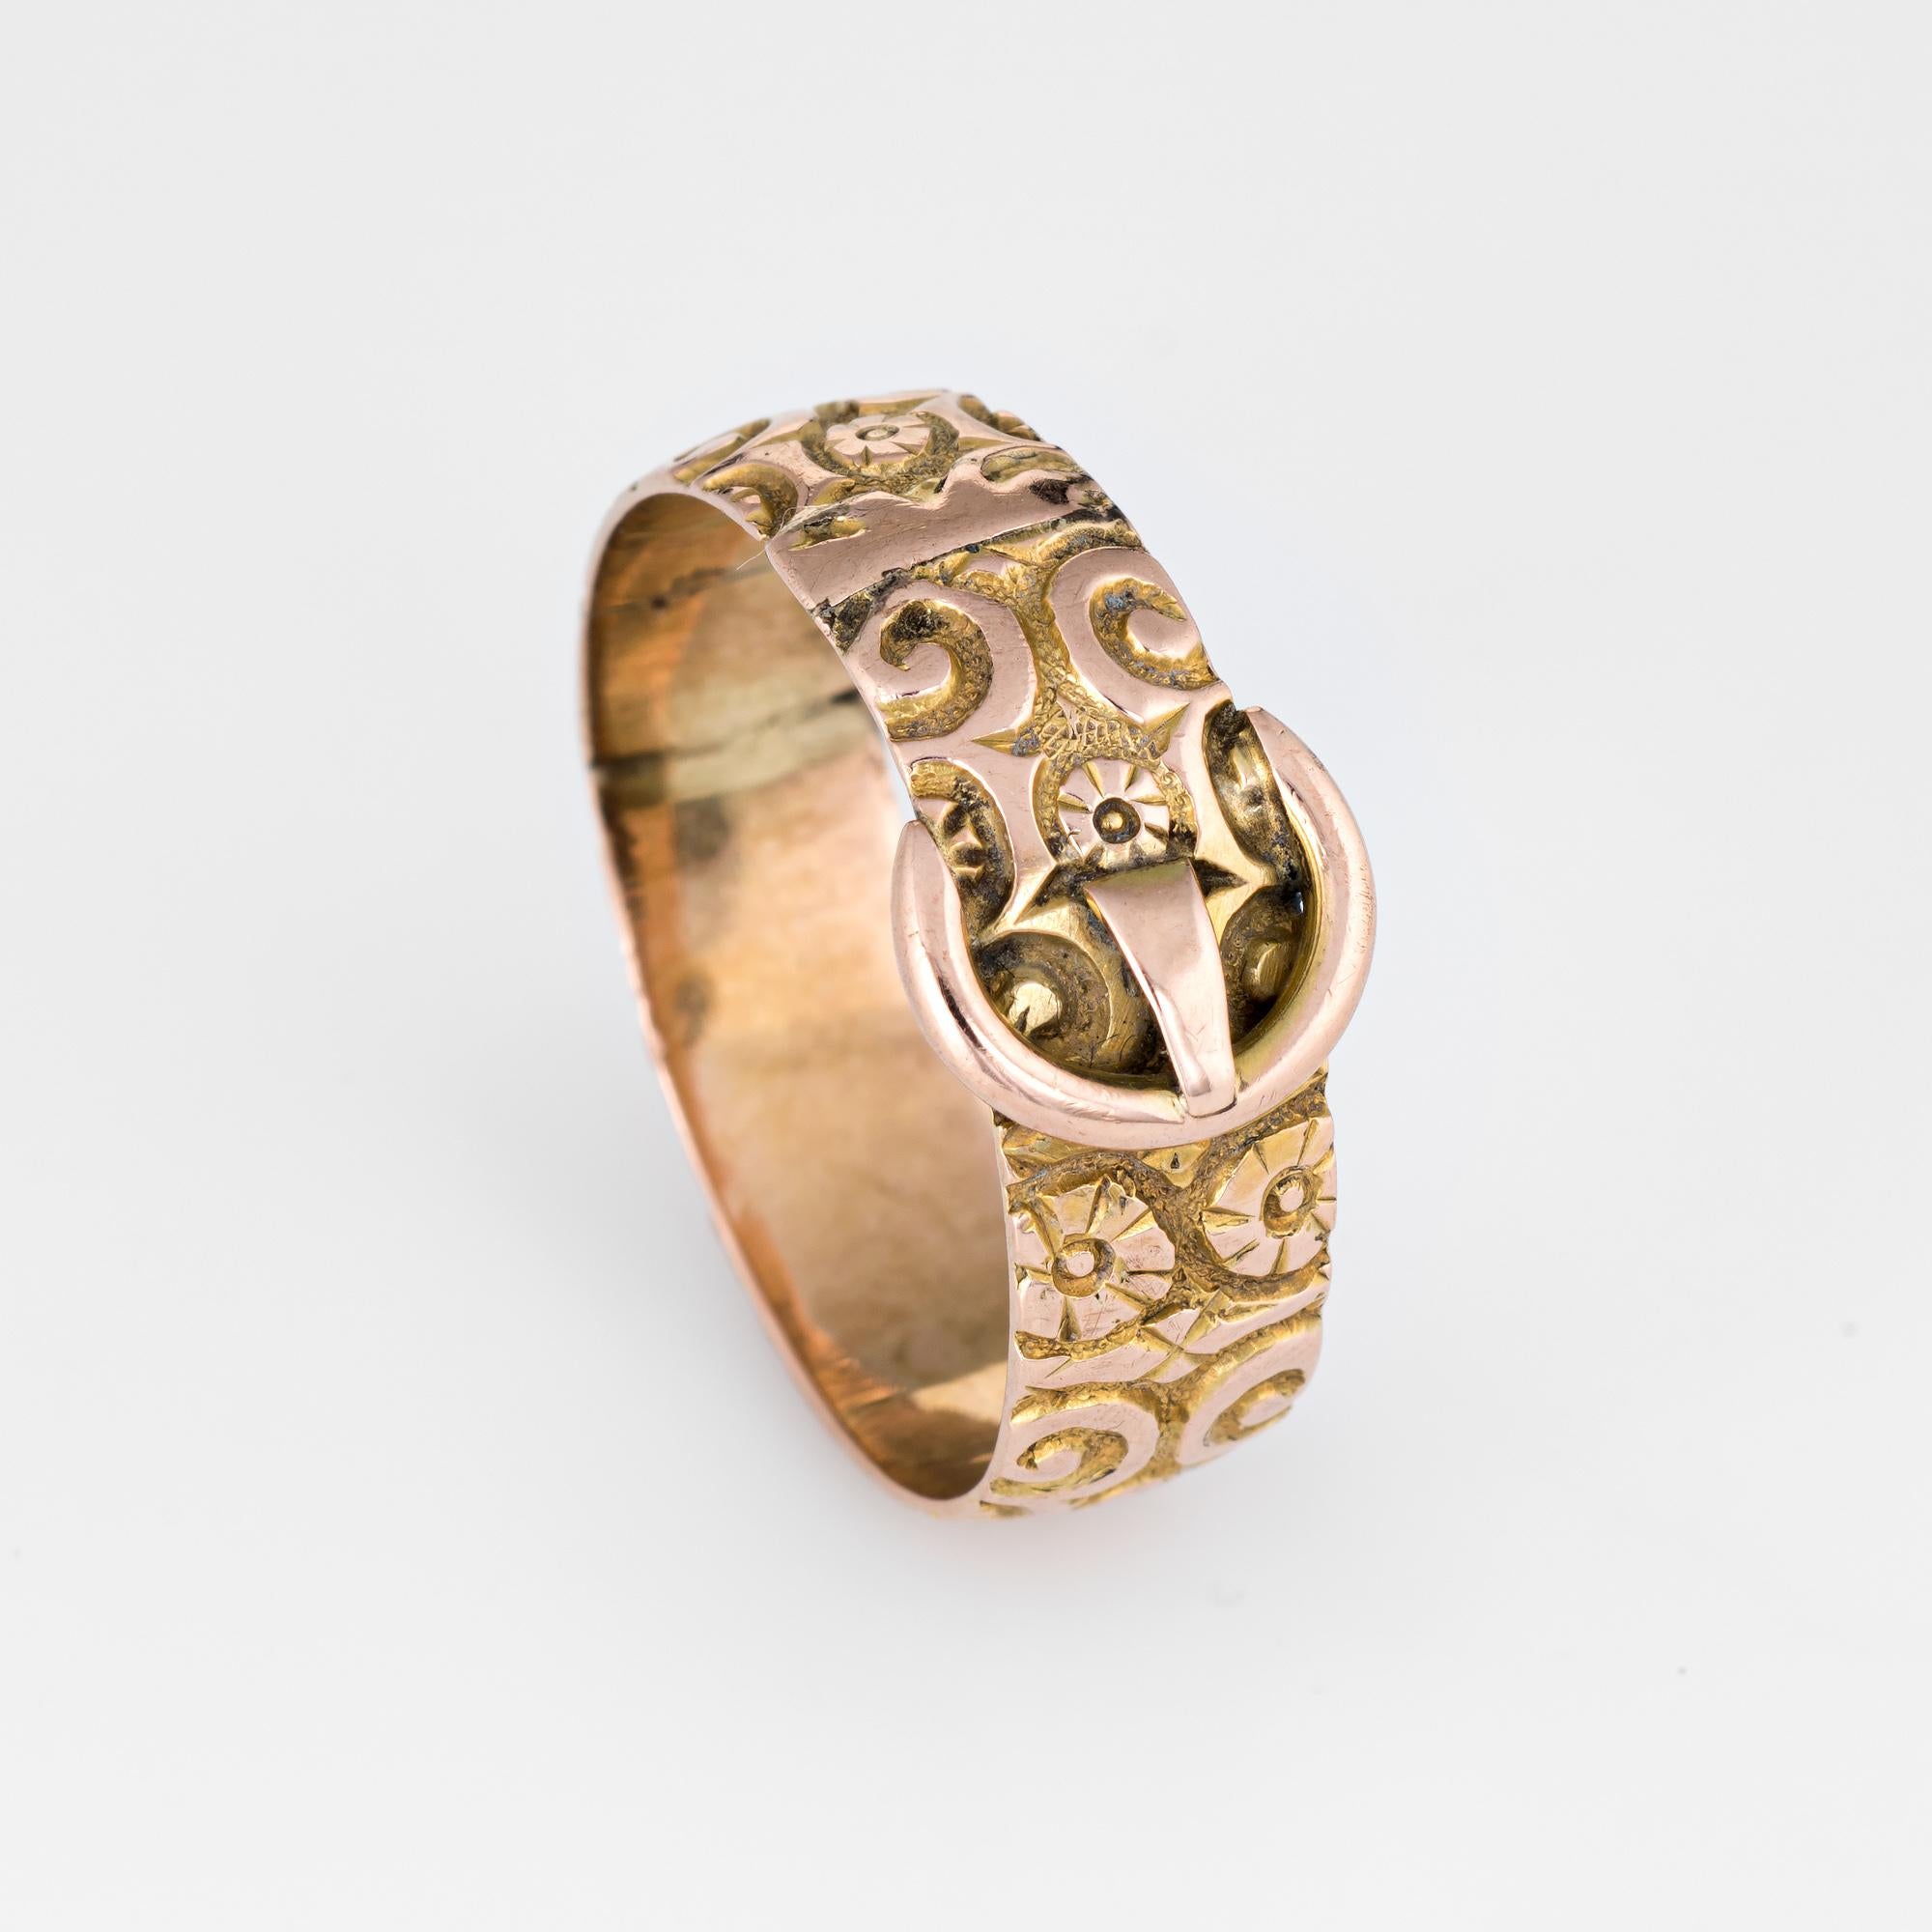 Fein gearbeiteter antiker Schnallenring (um 1913) aus 9 Karat Roségold. 

Der stilvolle antike Ring ist mit dem beliebten Schnallendesign versehen, das die Verbindung zweier Leben symbolisiert. Der Ring kann allein, übereinander oder als